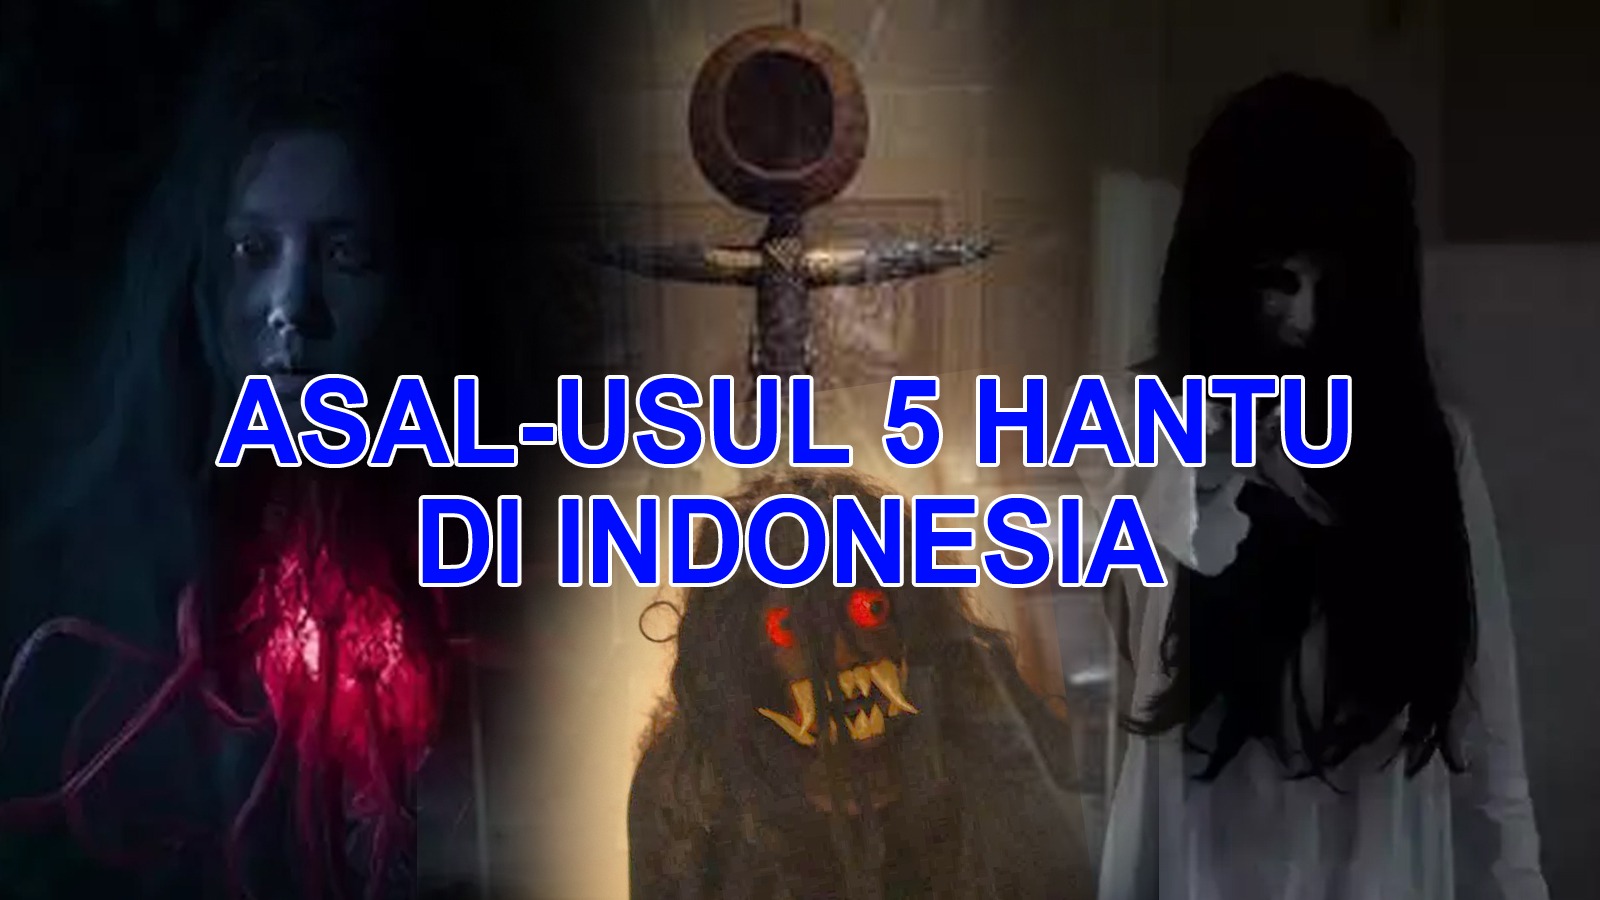 Asal-usul 5 Hantu di Indonesia, Wajib Tahu Ceritanya